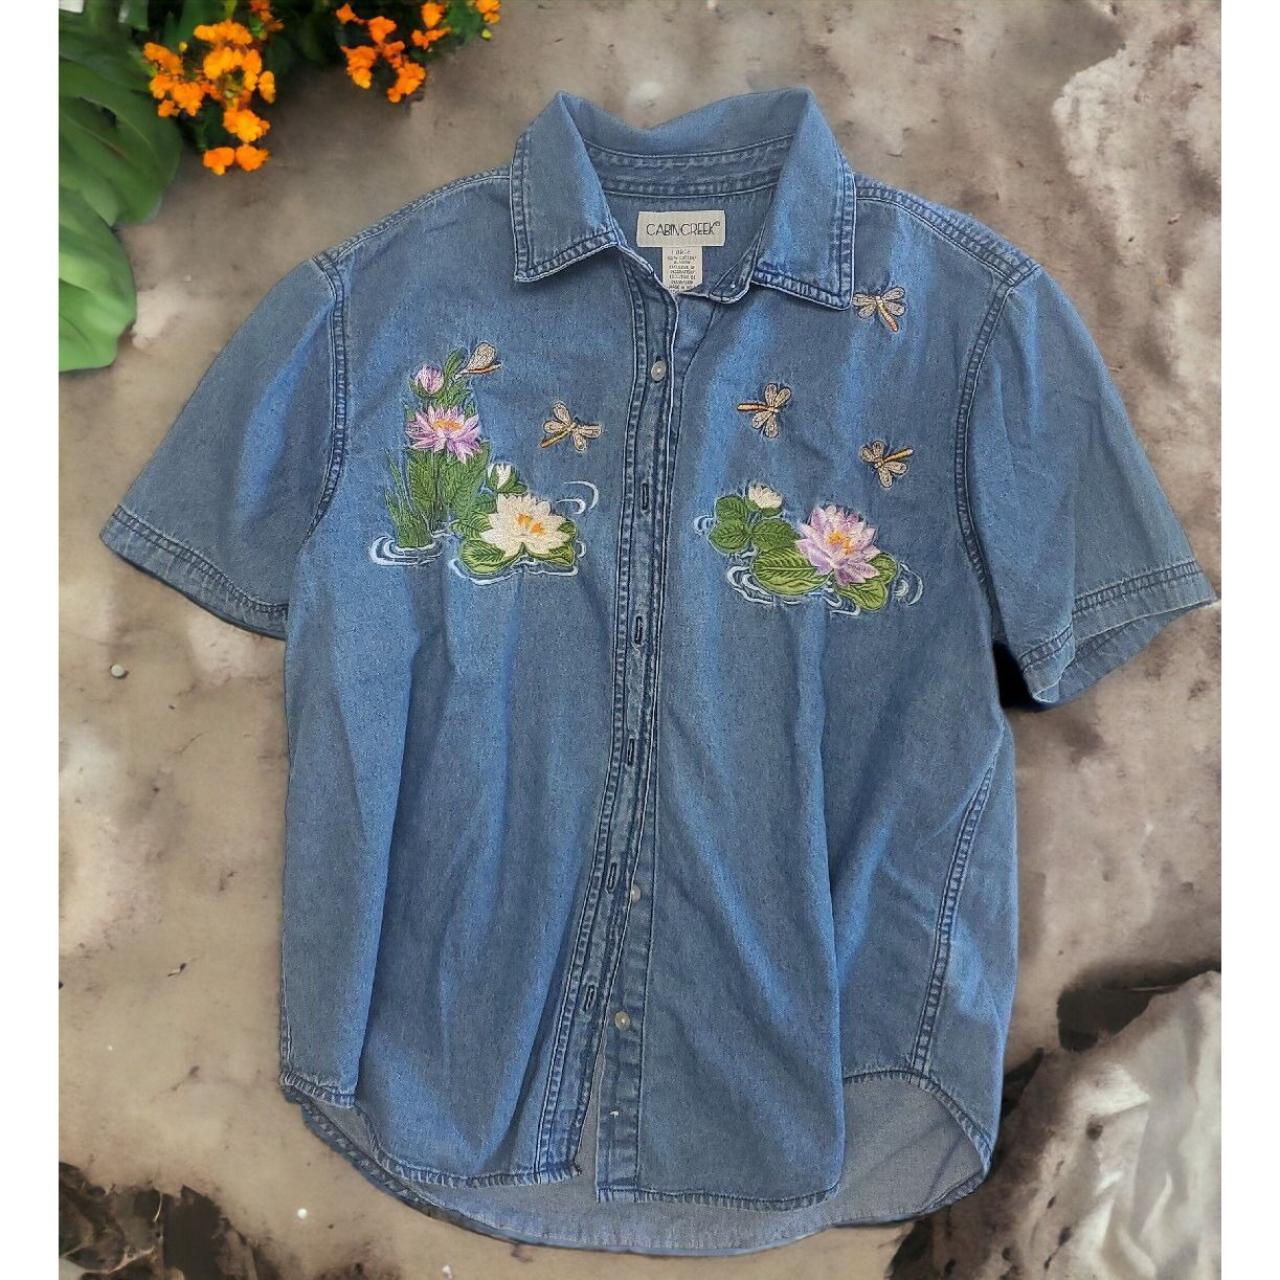 Cabin Creek S/S Blue Denim Shirt Dragonflies Lilly... - Depop